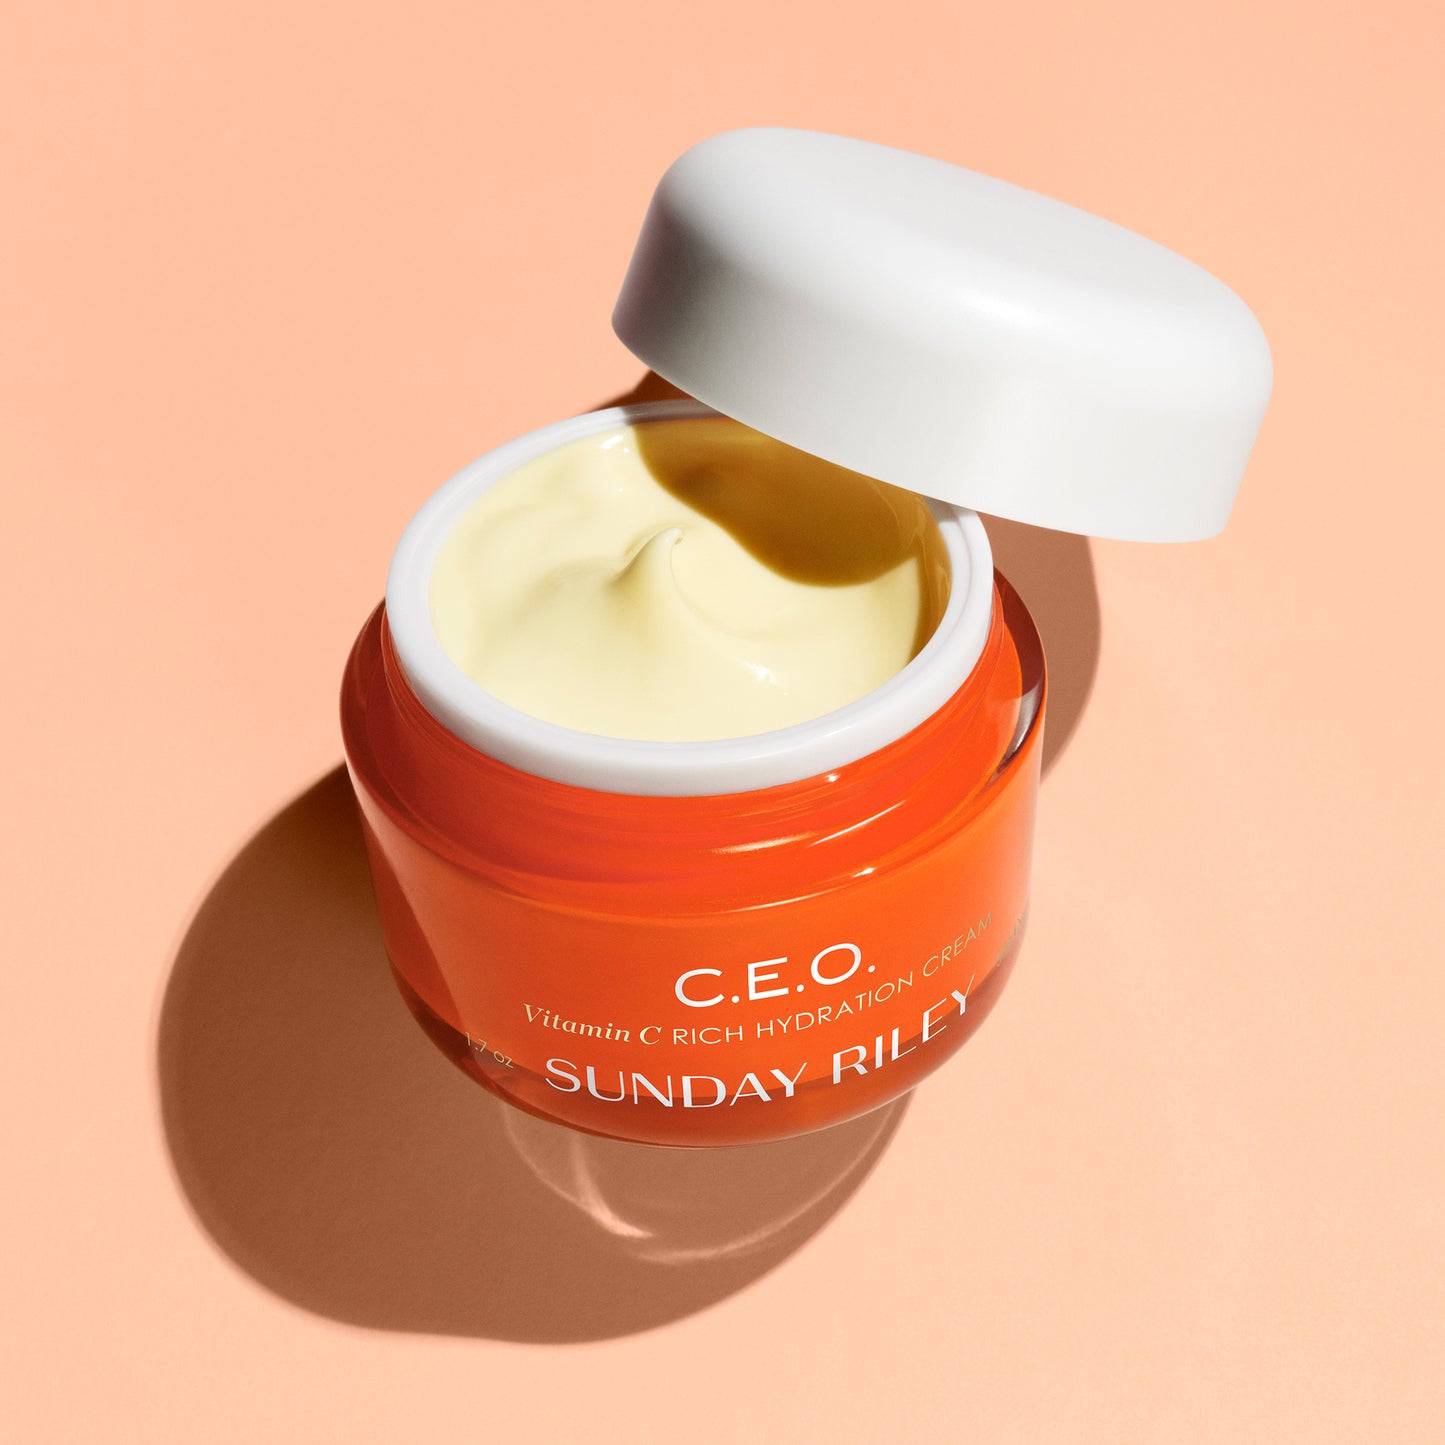 Pastel orange background, open CEO moisturizer jar, light yellow moisturizer cream 